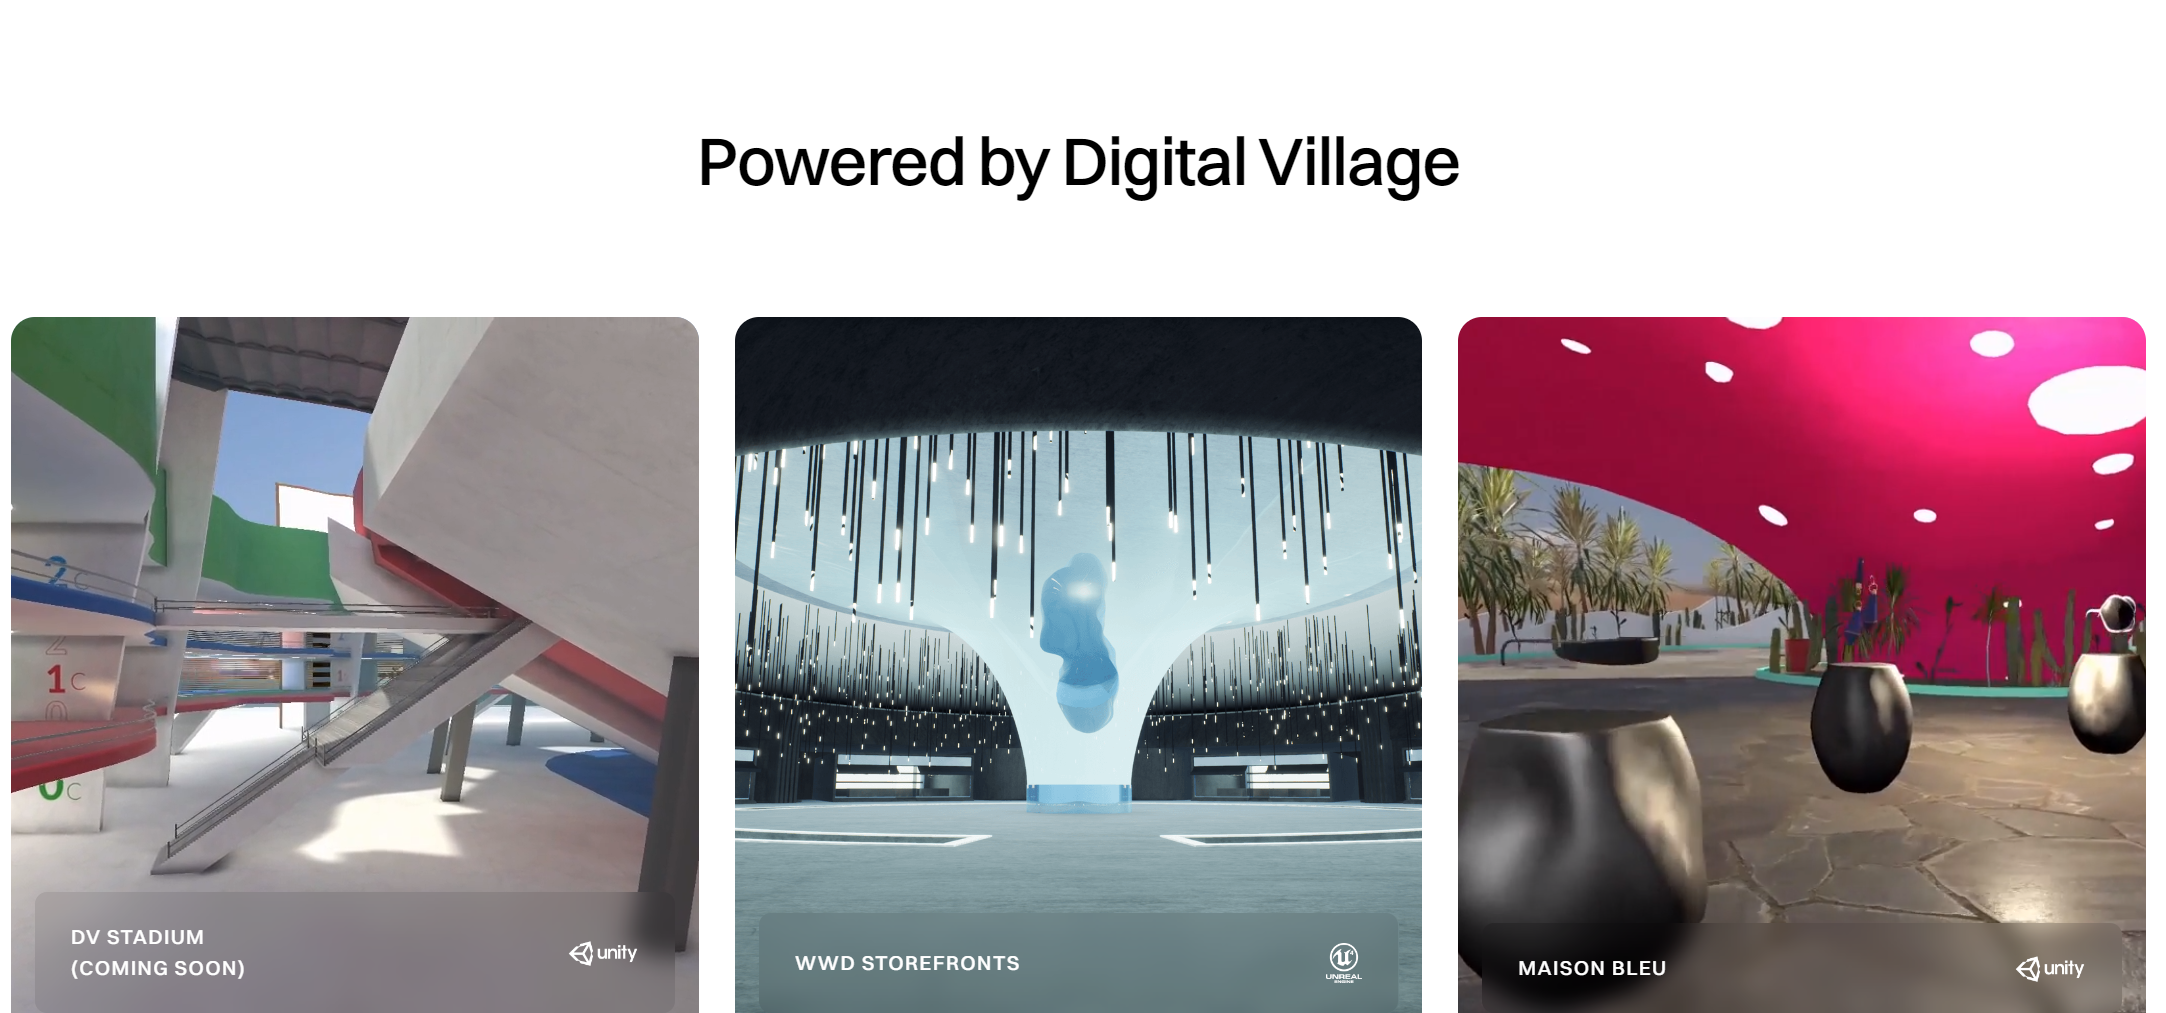 欧莱雅集团、英国时装协会投资法国元宇宙初创公司 Digital Village